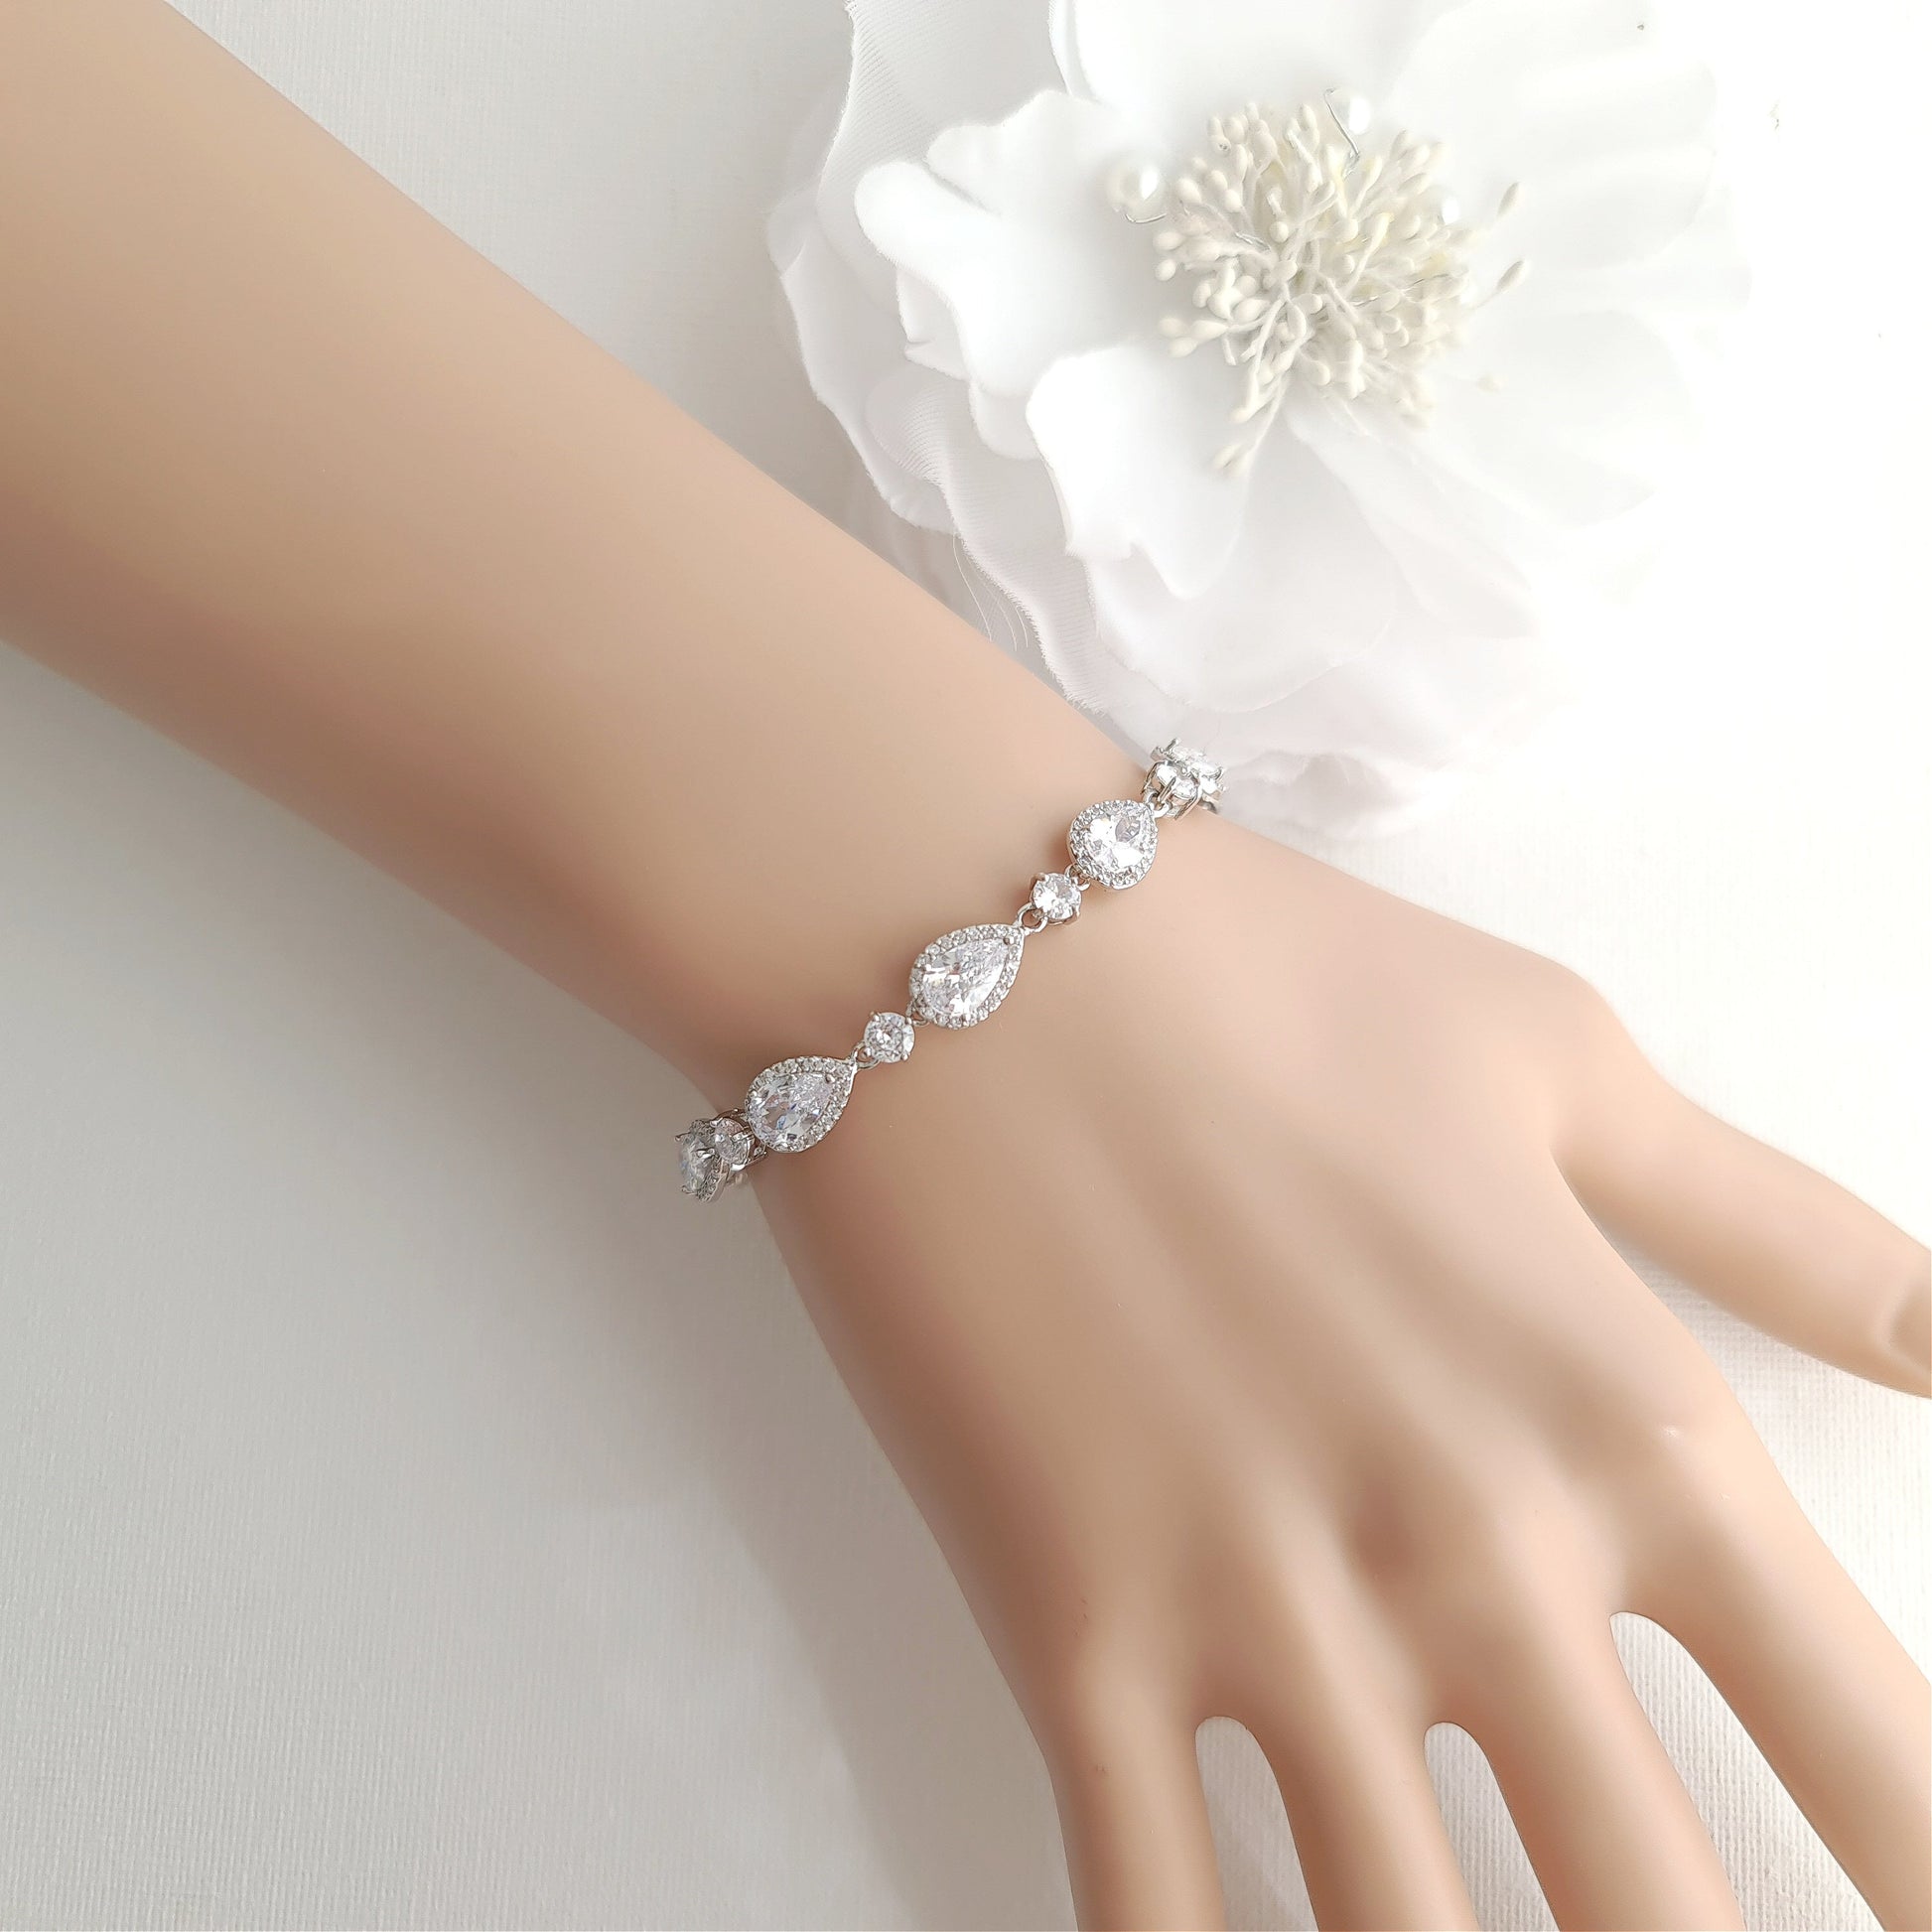 Bracelet for brides